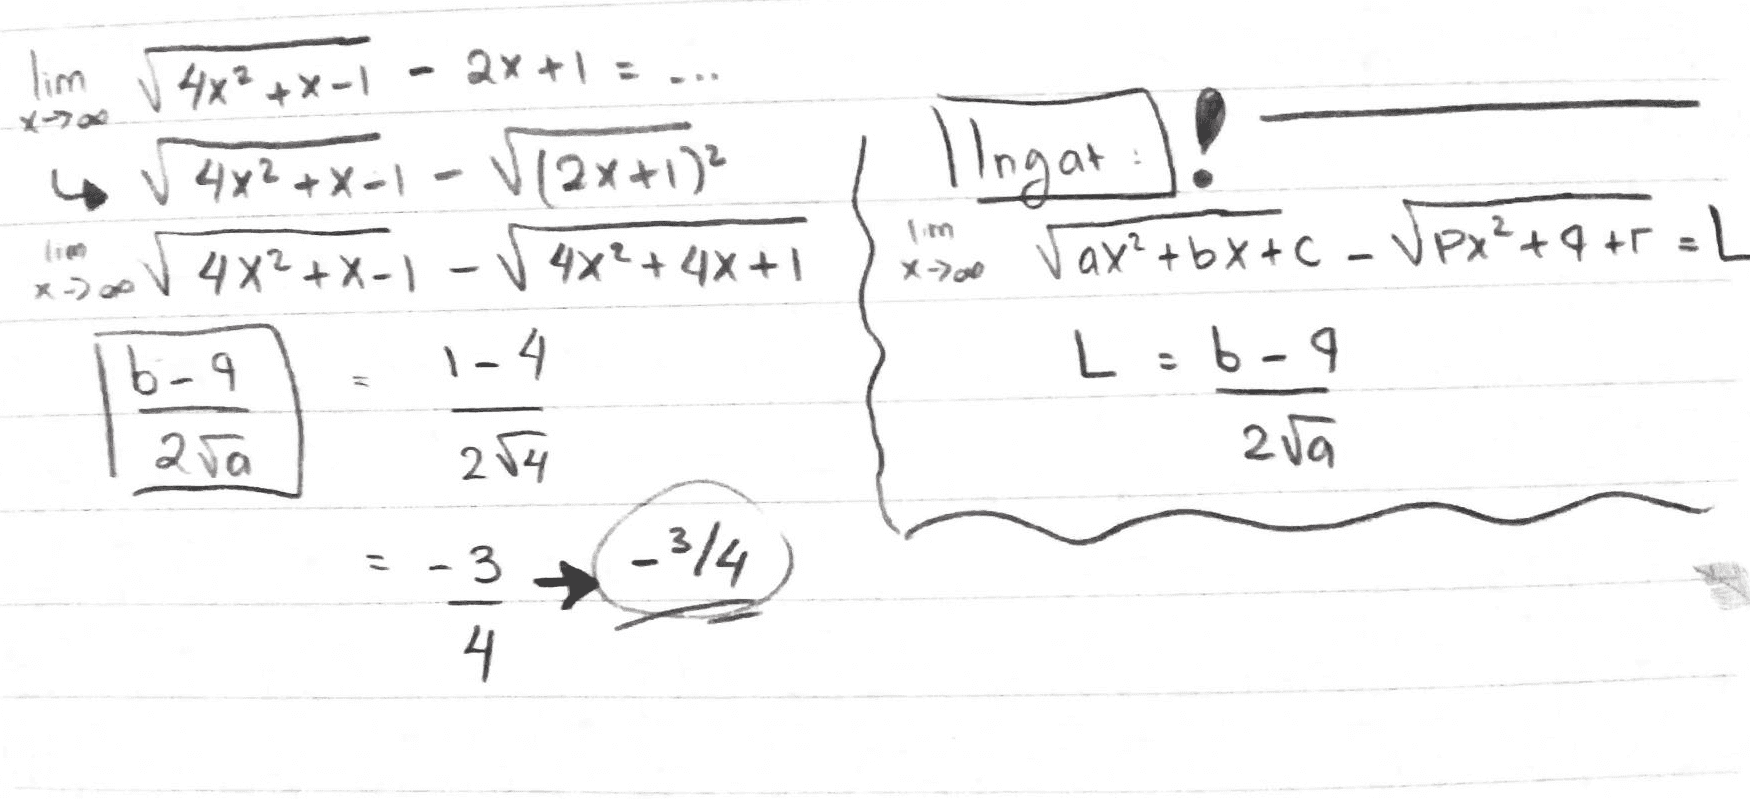 lim | | Ingat vax²+bx+C - tc-VPx²+4+1 =L L:6-9 - 4x2+x-1 2x+1 √4x²+x=1 - V12x+1)? 4x2+x-1 - 4x² + 4x +1 b-9 2yo 254 -3 -314 4 X>00 1-4 bra 